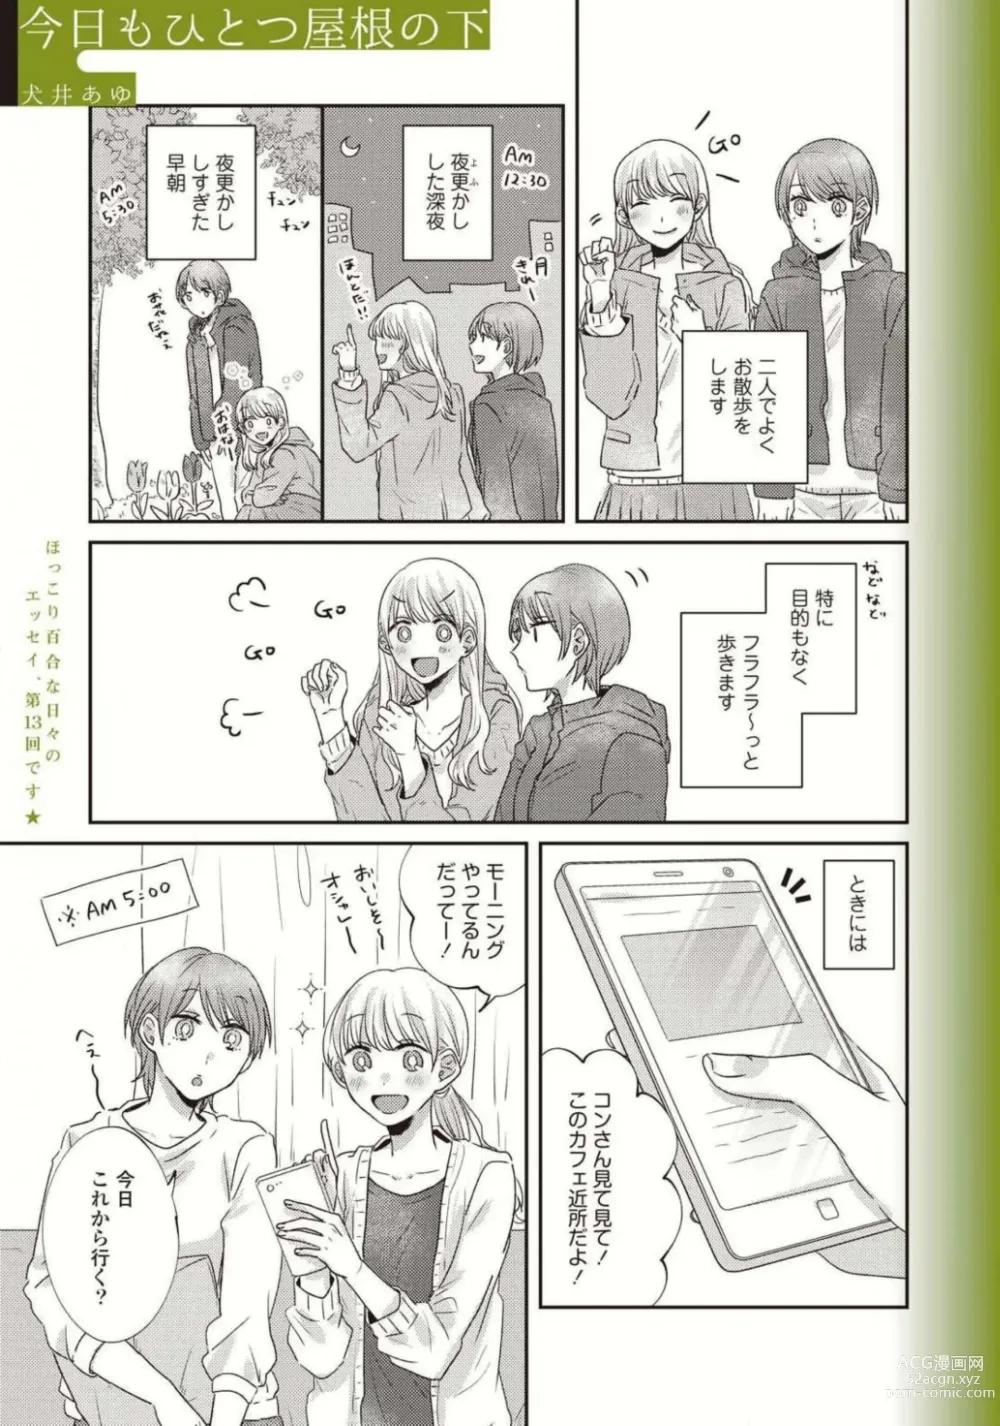 Page 567 of manga Comic Yuri Hime 2021-01